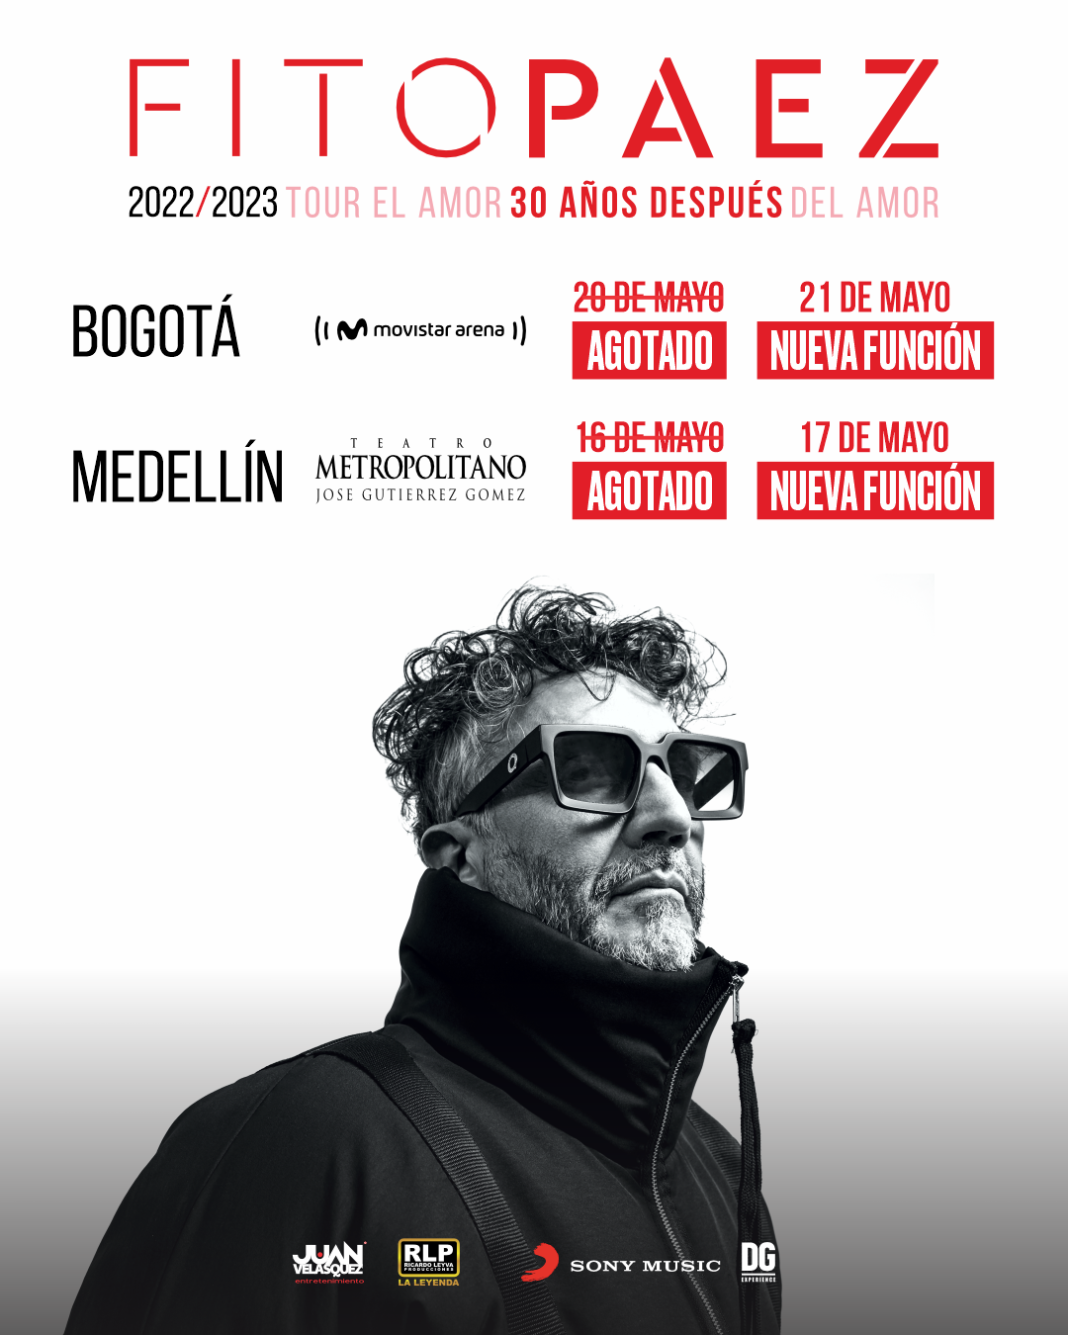 Fito Paéz confirma 2 fechas más para Bogotá y Medellín